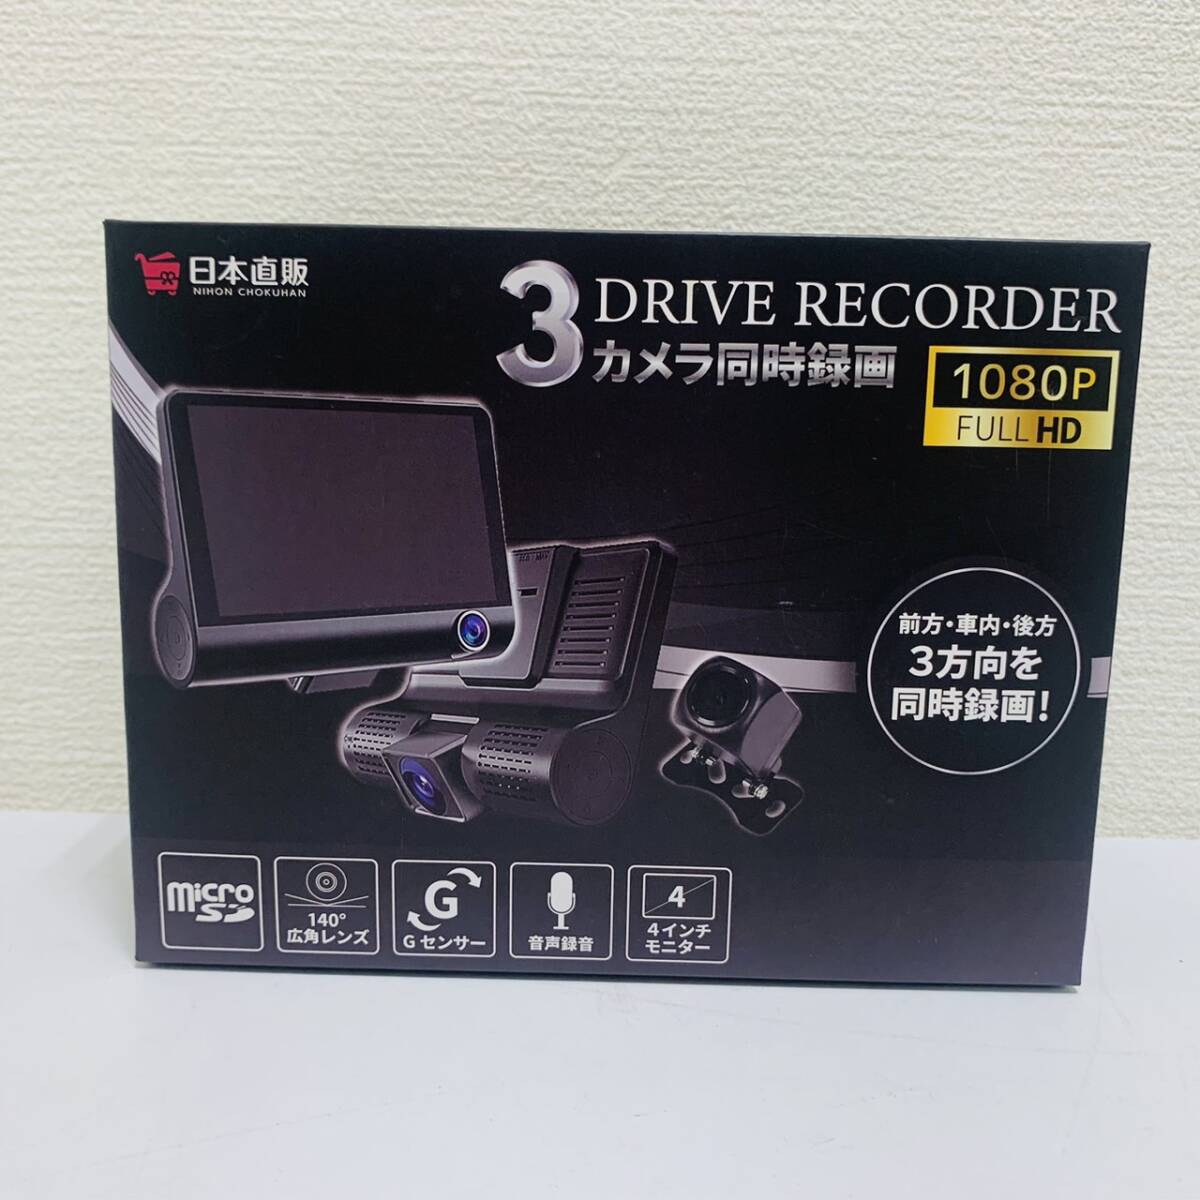 [SPM-5021]1 иен ~ 3DRIVE RECORDRE 1080P FULL HD не использовался регистратор пути (drive recorder) не использовался товар хранение товар видеозапись принадлежности закончившийся товар коробка иметь 